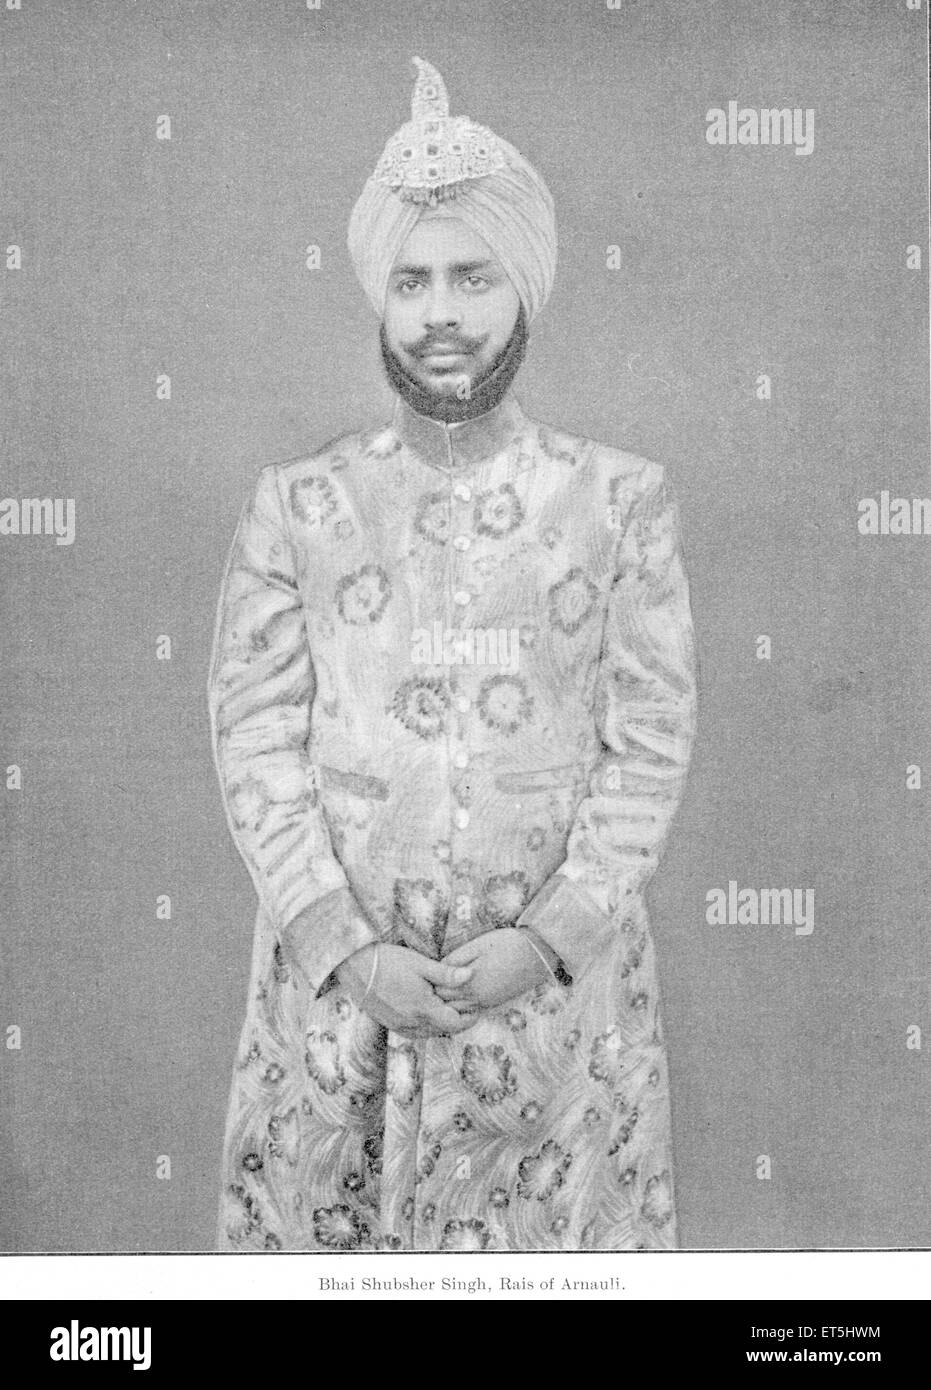 Fürsten von Indien; Bhai Shubsher Singh; Rais Arnauli; Punjab; Indien nicht Herr Stockfoto